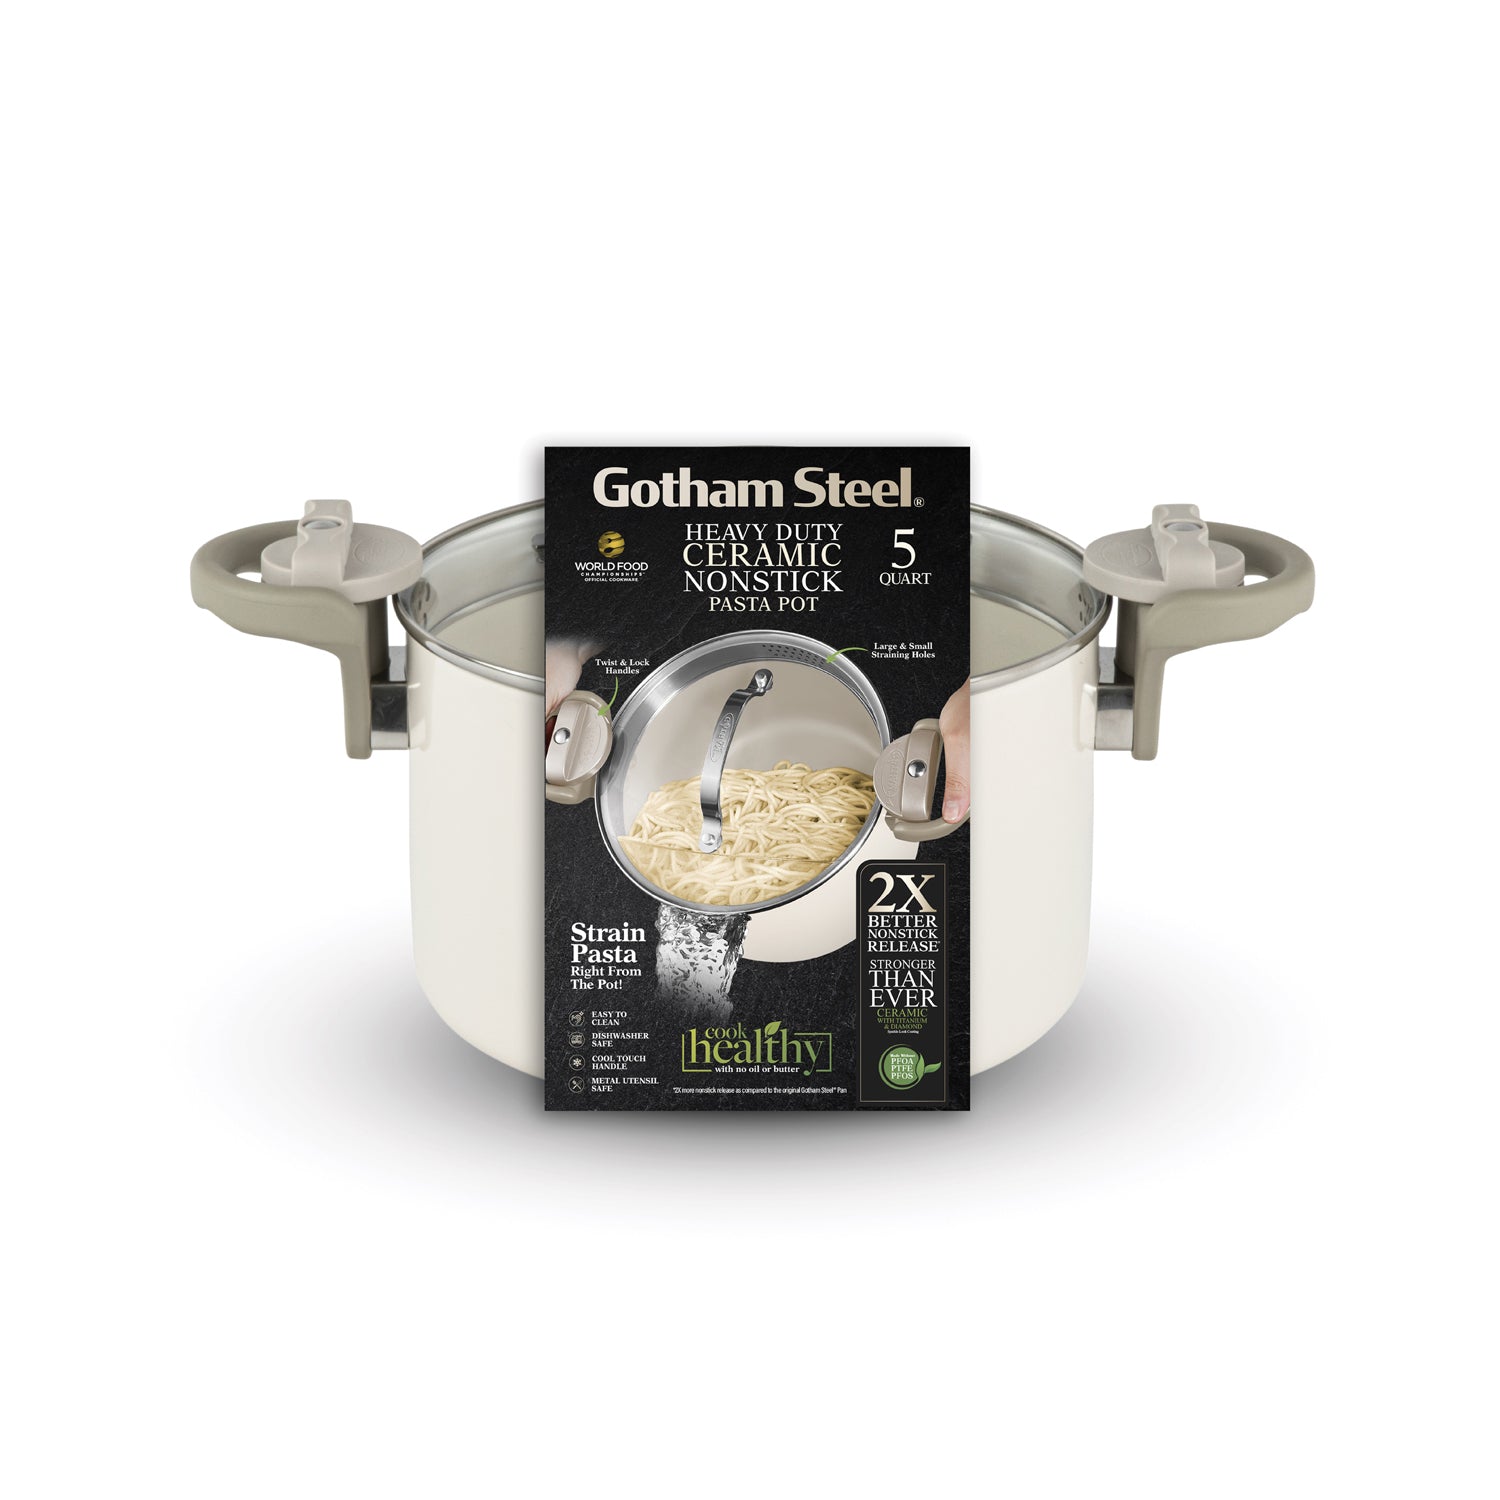 Gotham Steel 5 Quart Stock Multipurpose Pasta Pot with Strainer